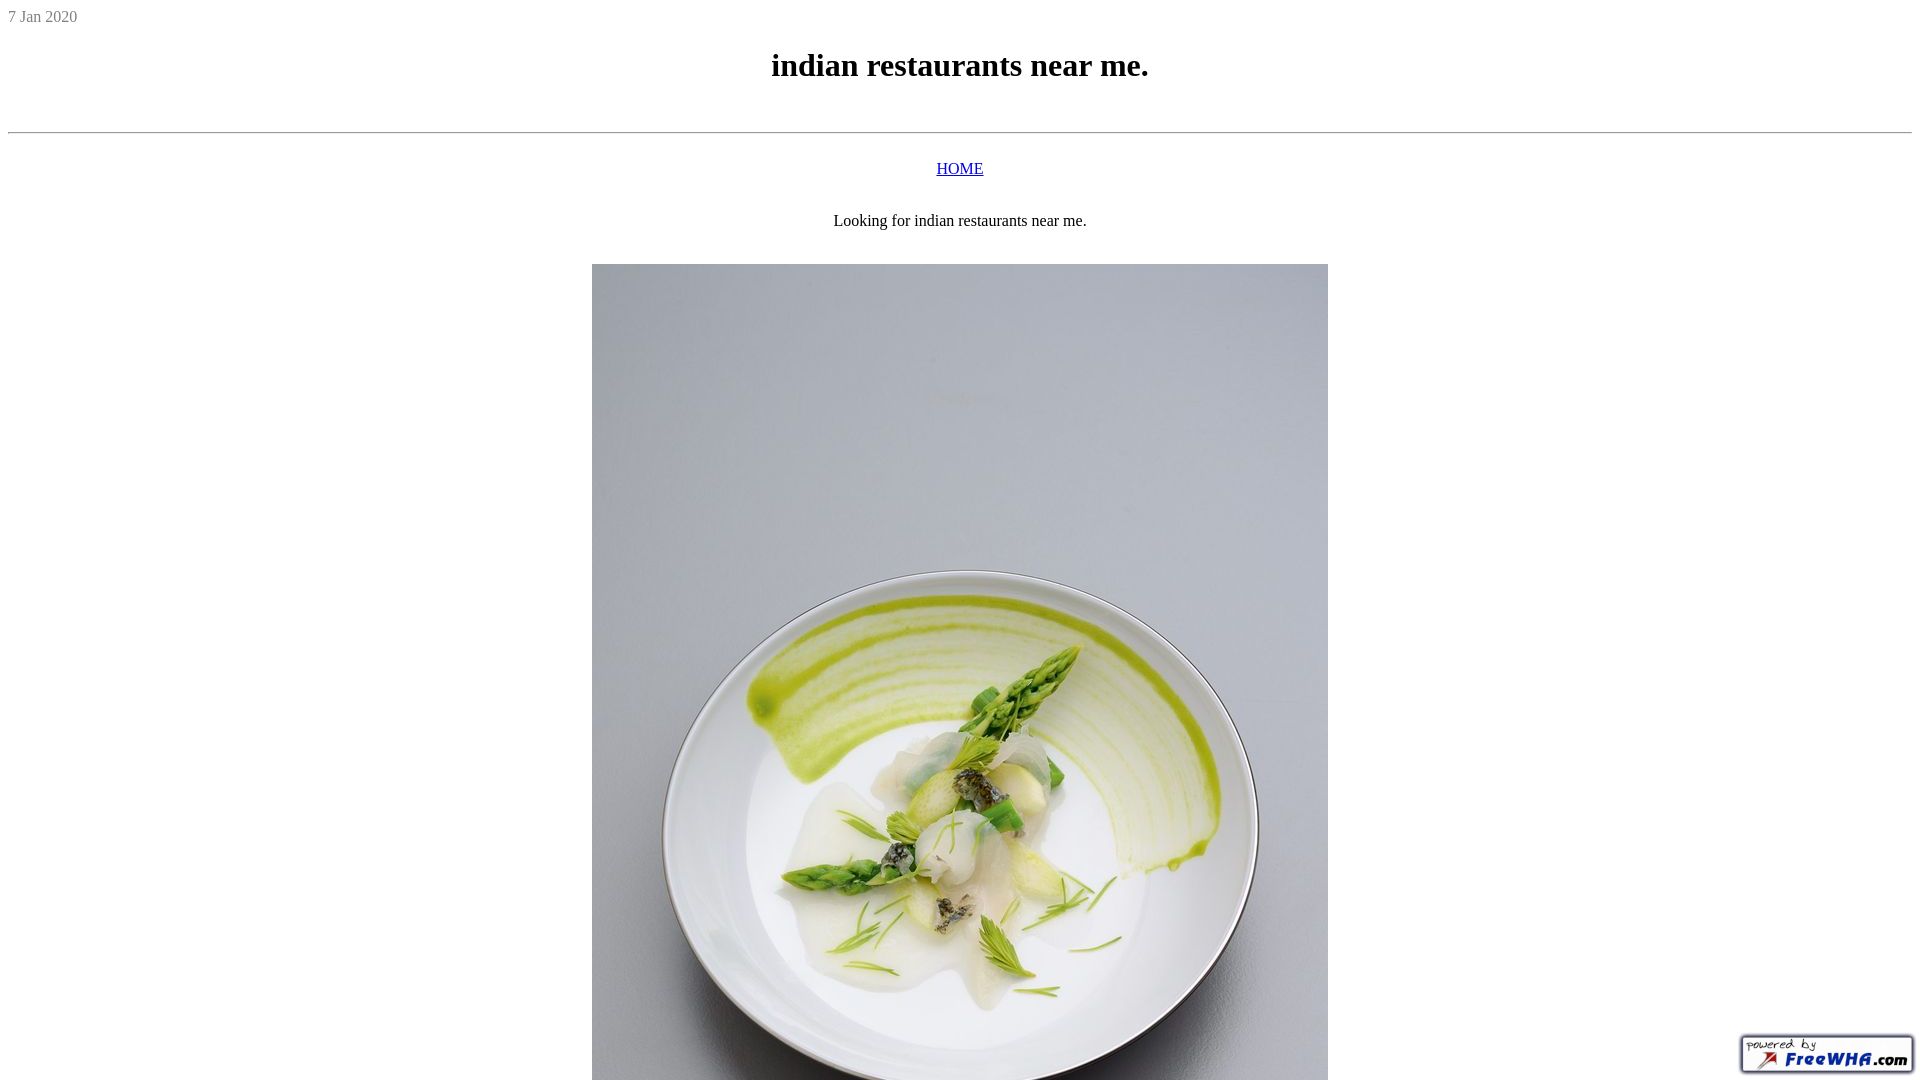 Stato del sito web indianrestaurantsnearme.ueuo.com è   ONLINE